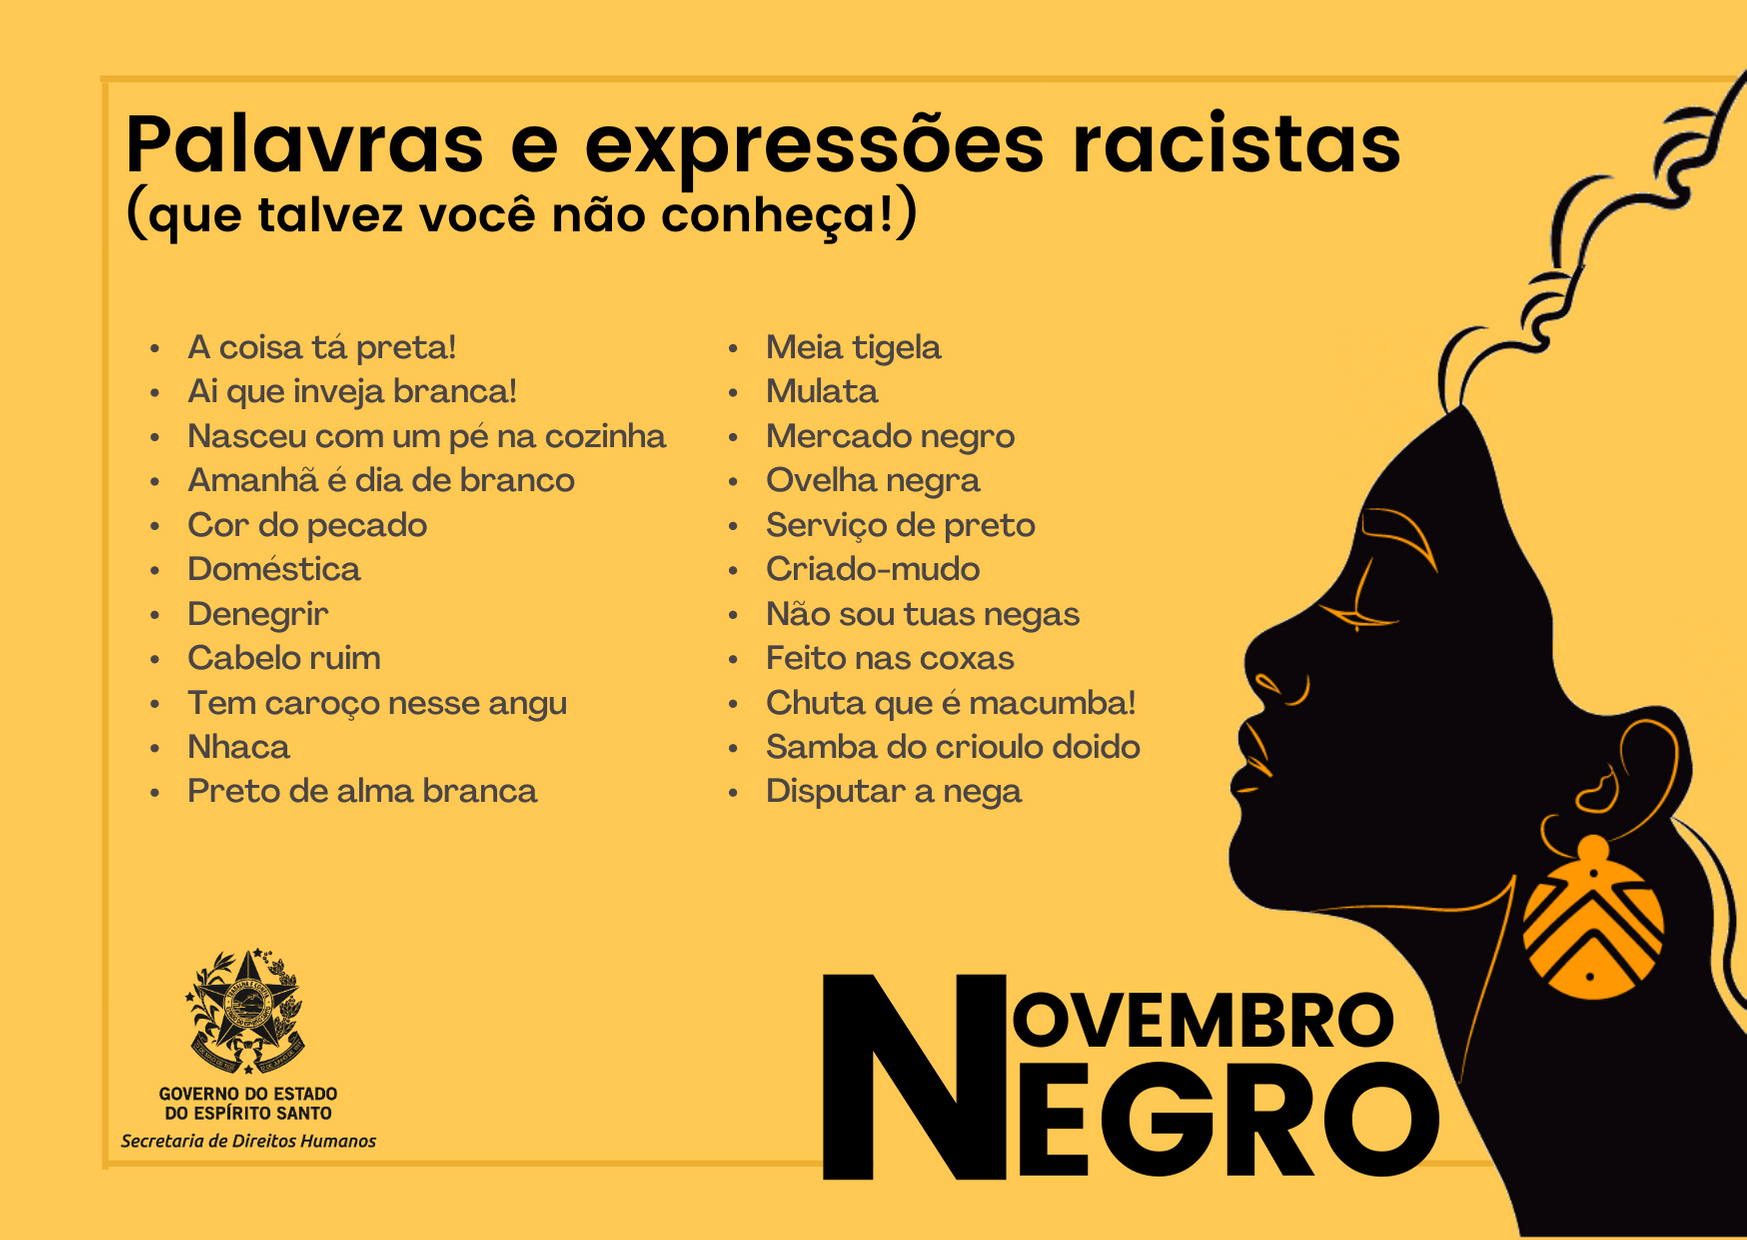 SEDH - Novembro Negro: conheça algumas expressões racistas e seus  significados